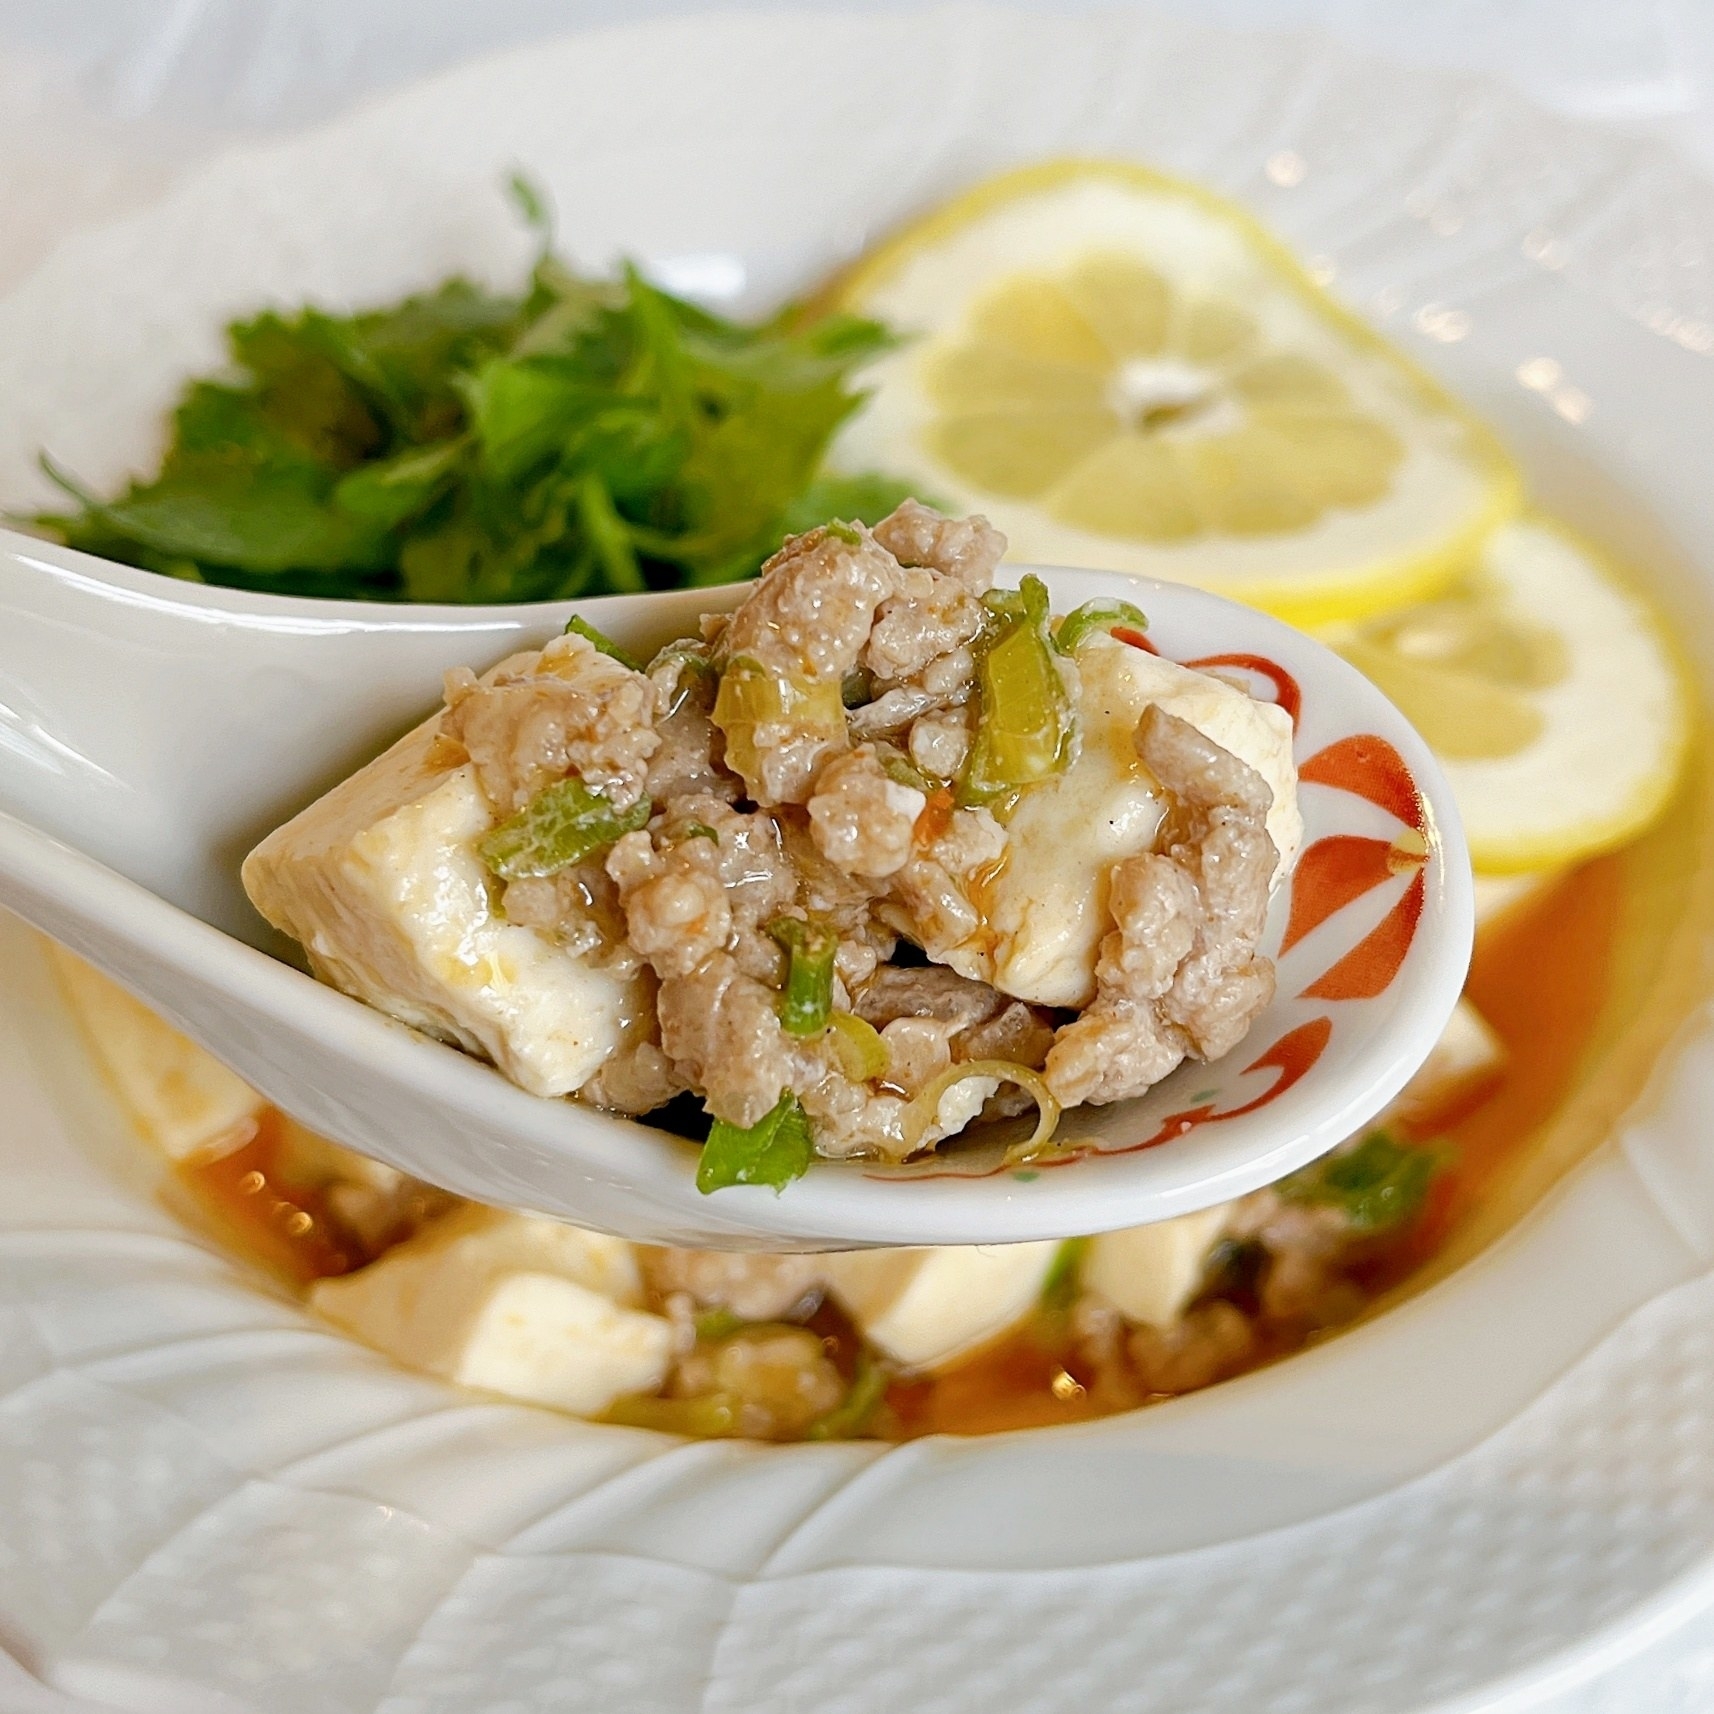 カルディのおすすめ料理キット「レモン麻婆豆腐の素」